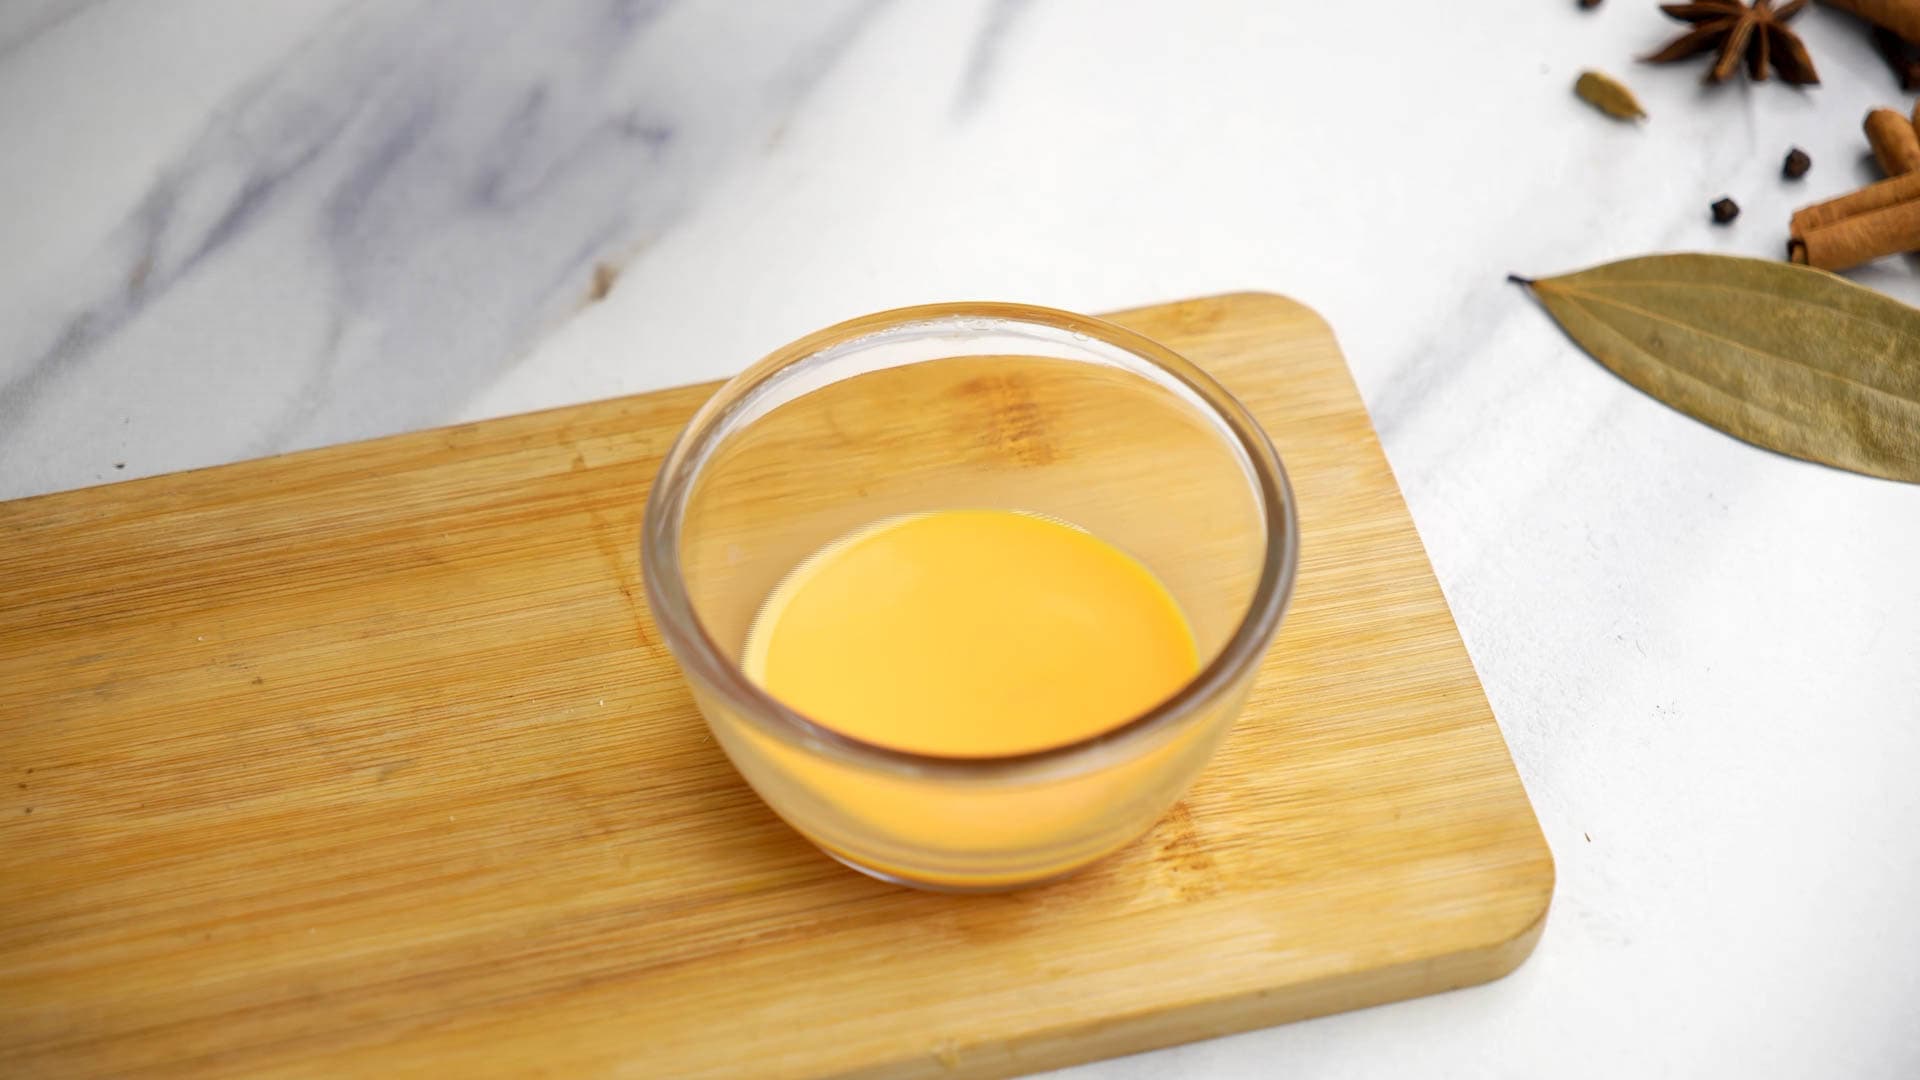 saffron milk in a bowl